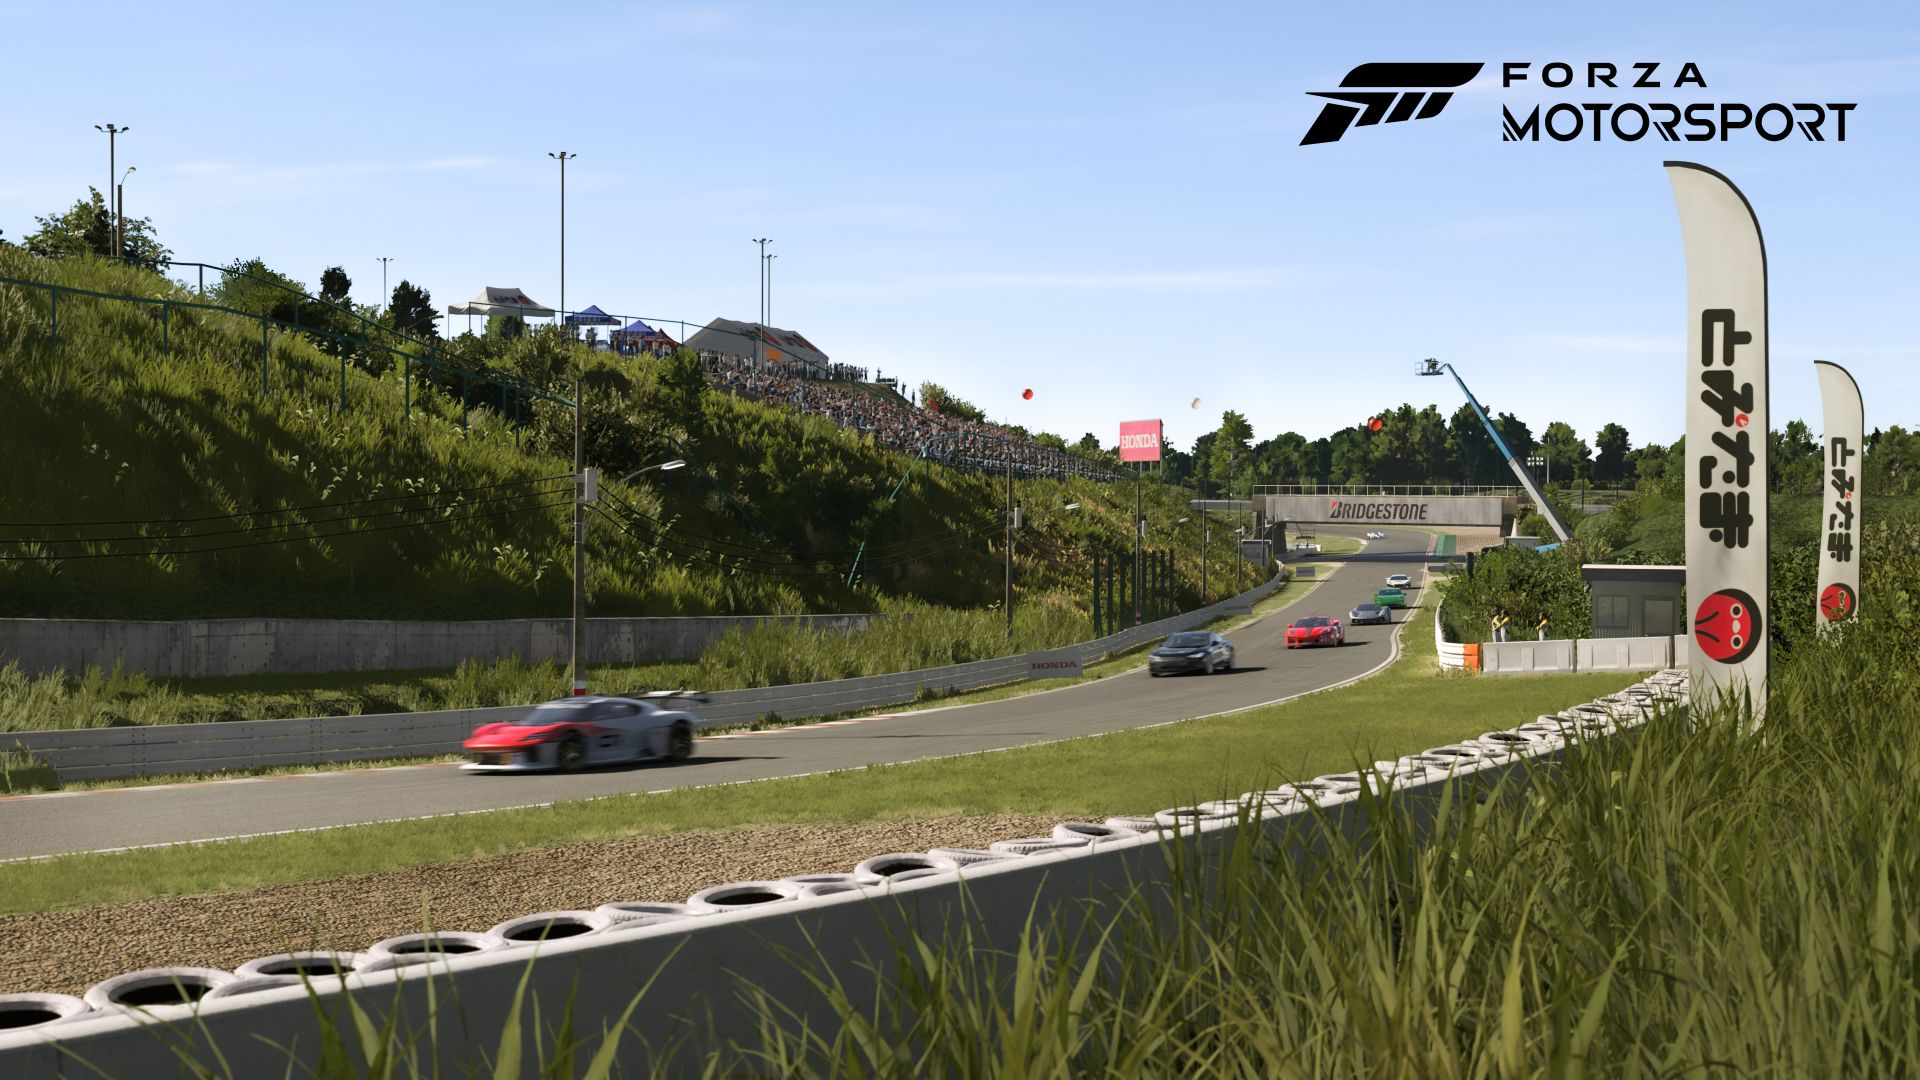 Forza Motorsport: Das ultimative Rennspiel – Jetzt verfügbar und